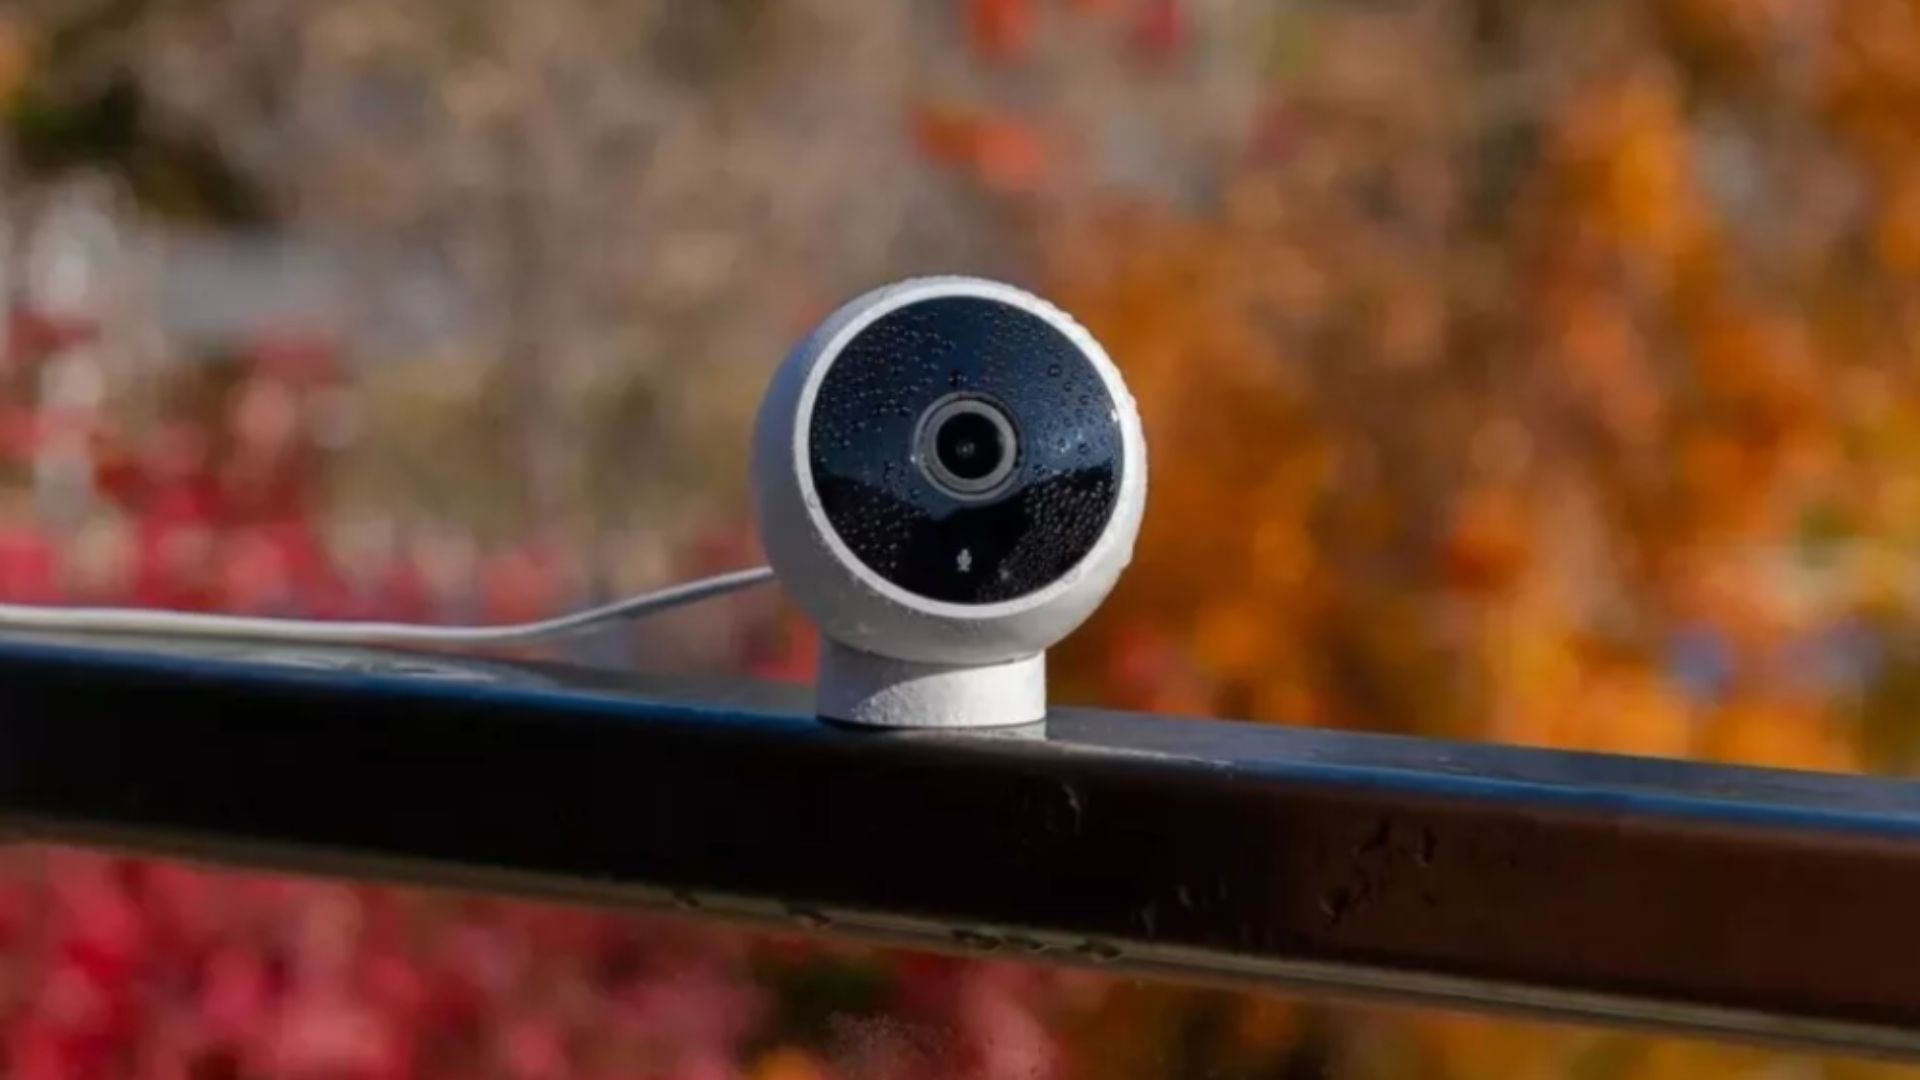 Caméras de Surveillance XIAOMI à prix pas cher